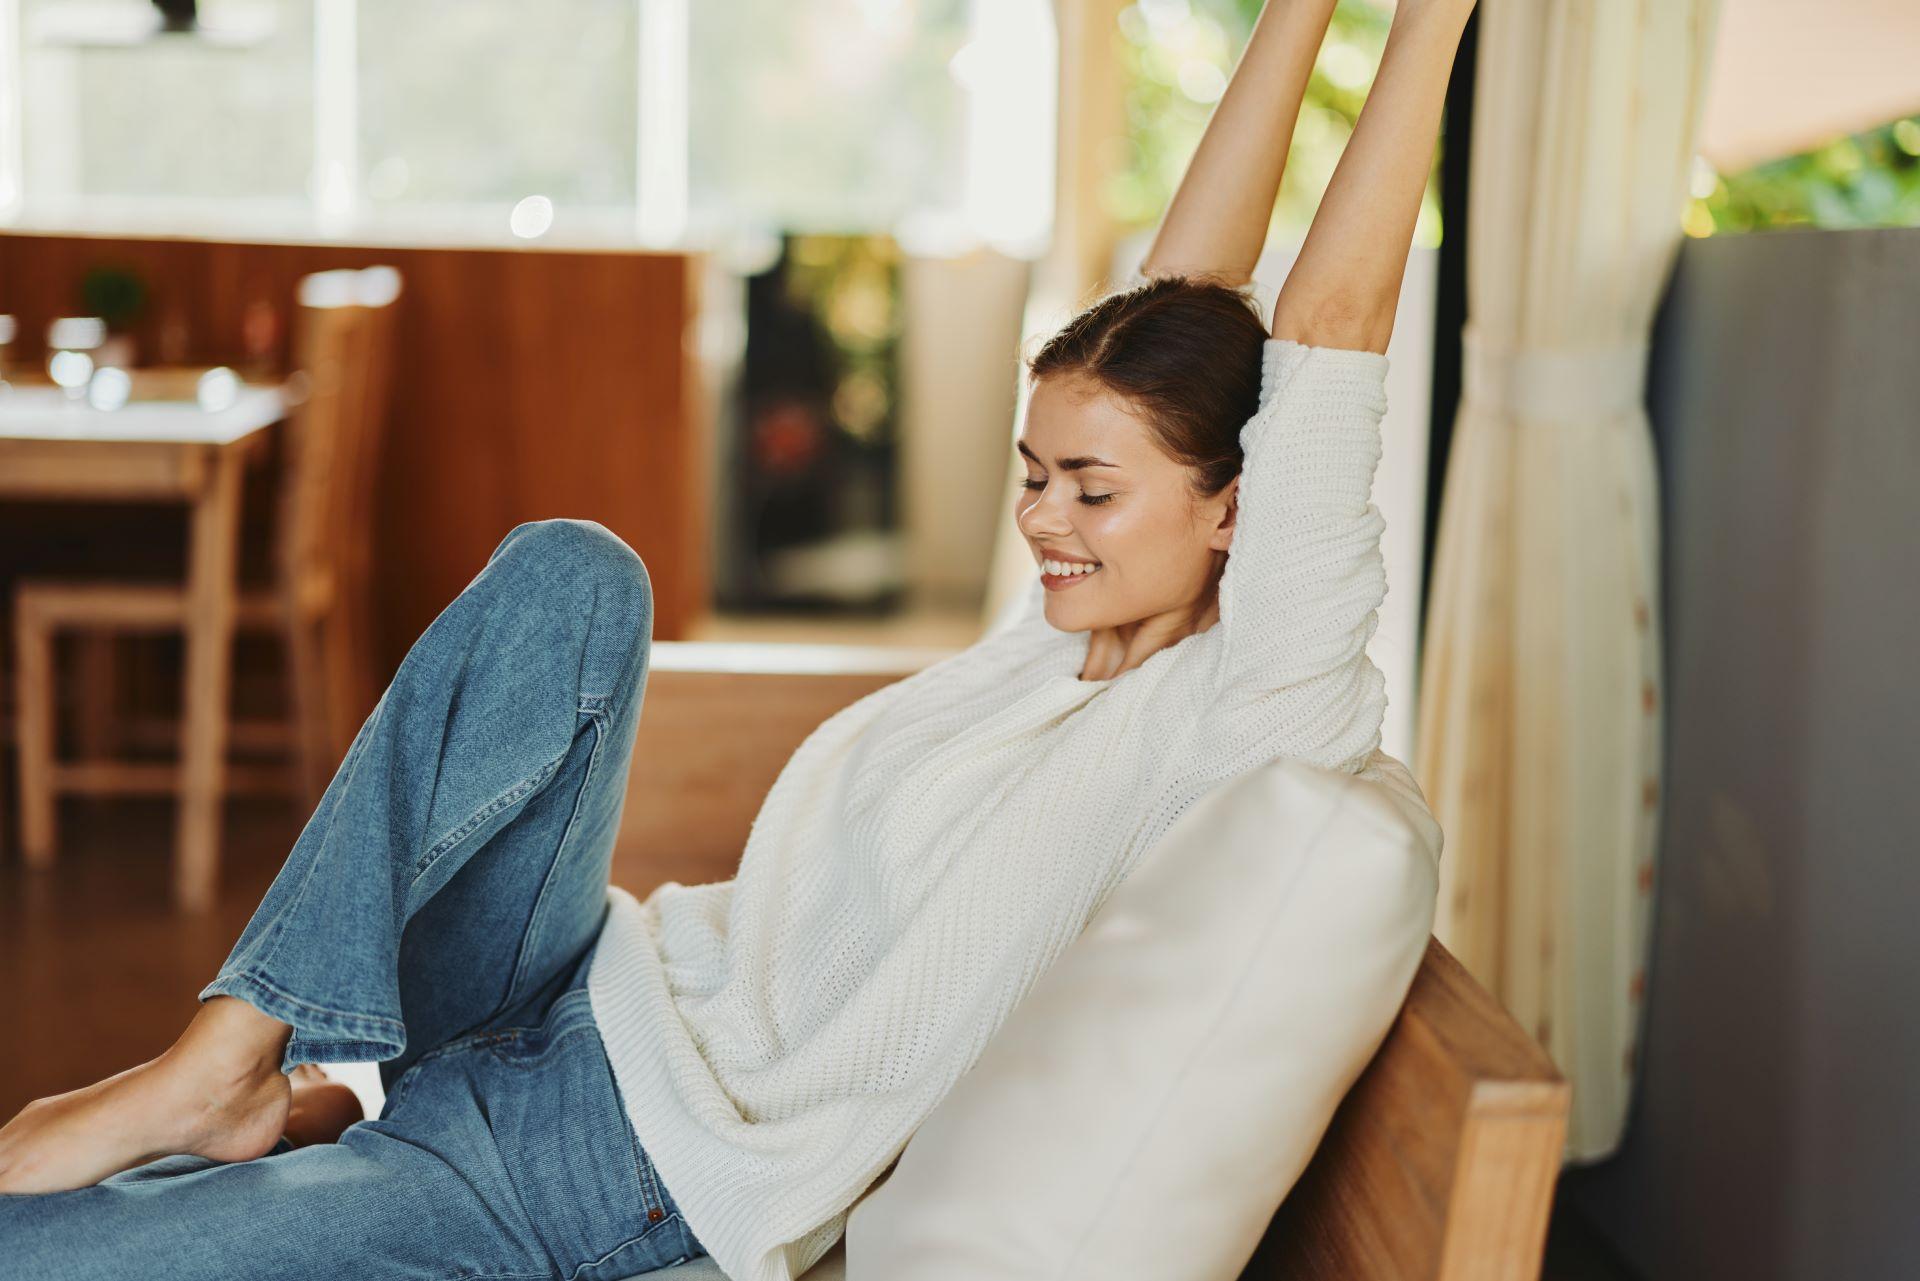 Frau sitzt zu Hause auf einer gemütlichen Couch und trägt einen warmen Strickpullover. Ihre natürliche Schönheit strahlt durch ihr freudiges Lächeln und ihren entspannten Gesichtsausdruck, während sie einen Moment der Zufriedenheit und des Glücks genießt